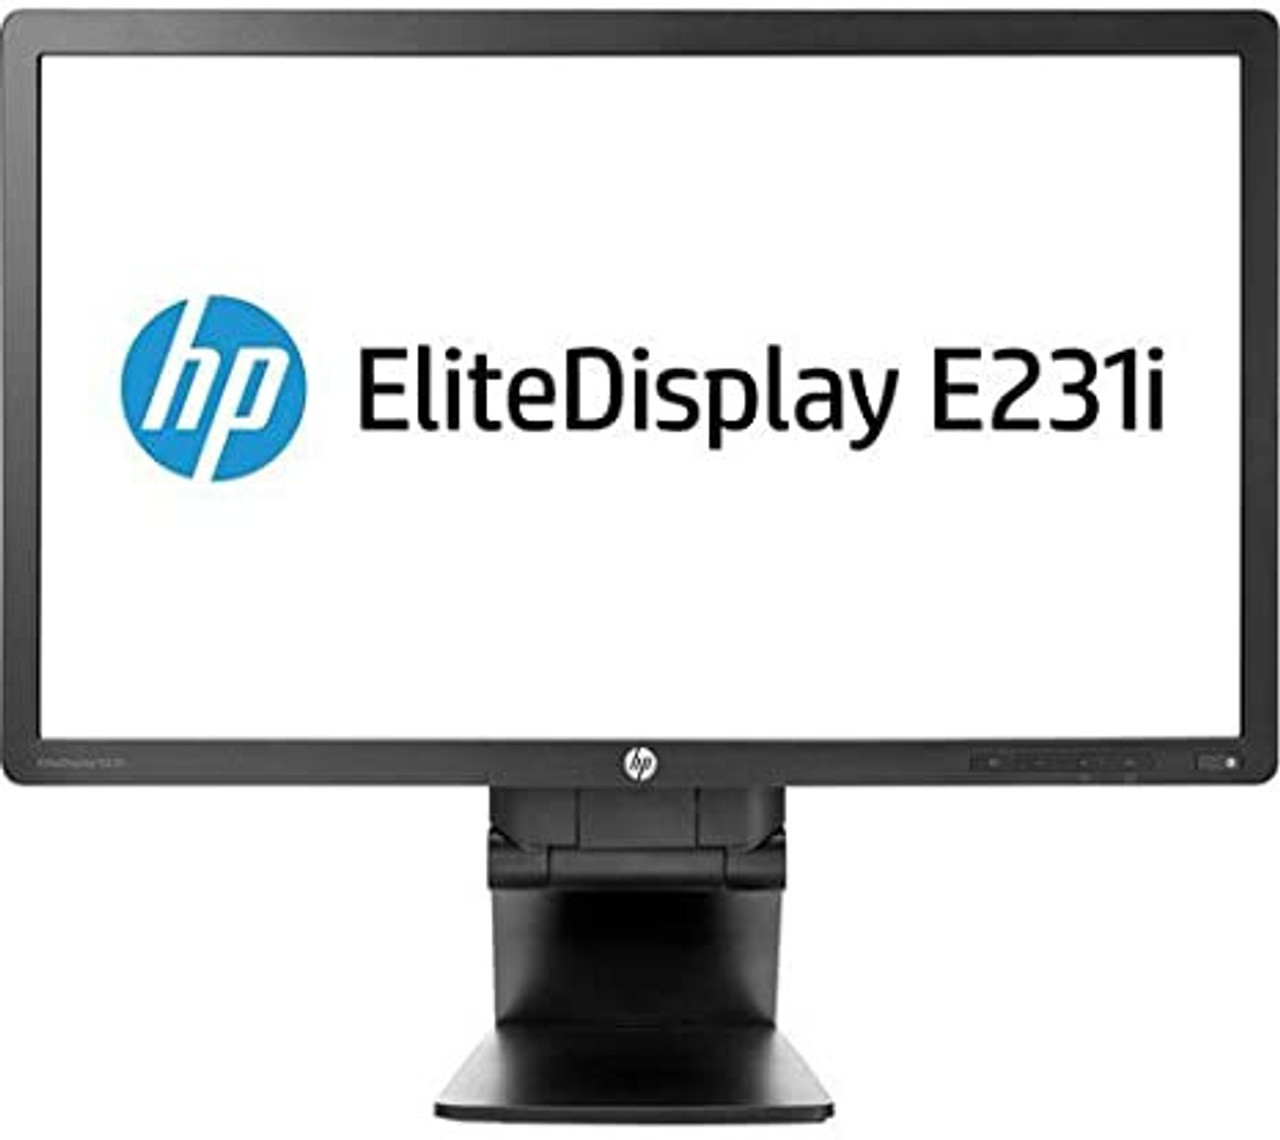 HP EliteDisplay E231i 23-Inch 1080p LED Widescreen Monitor